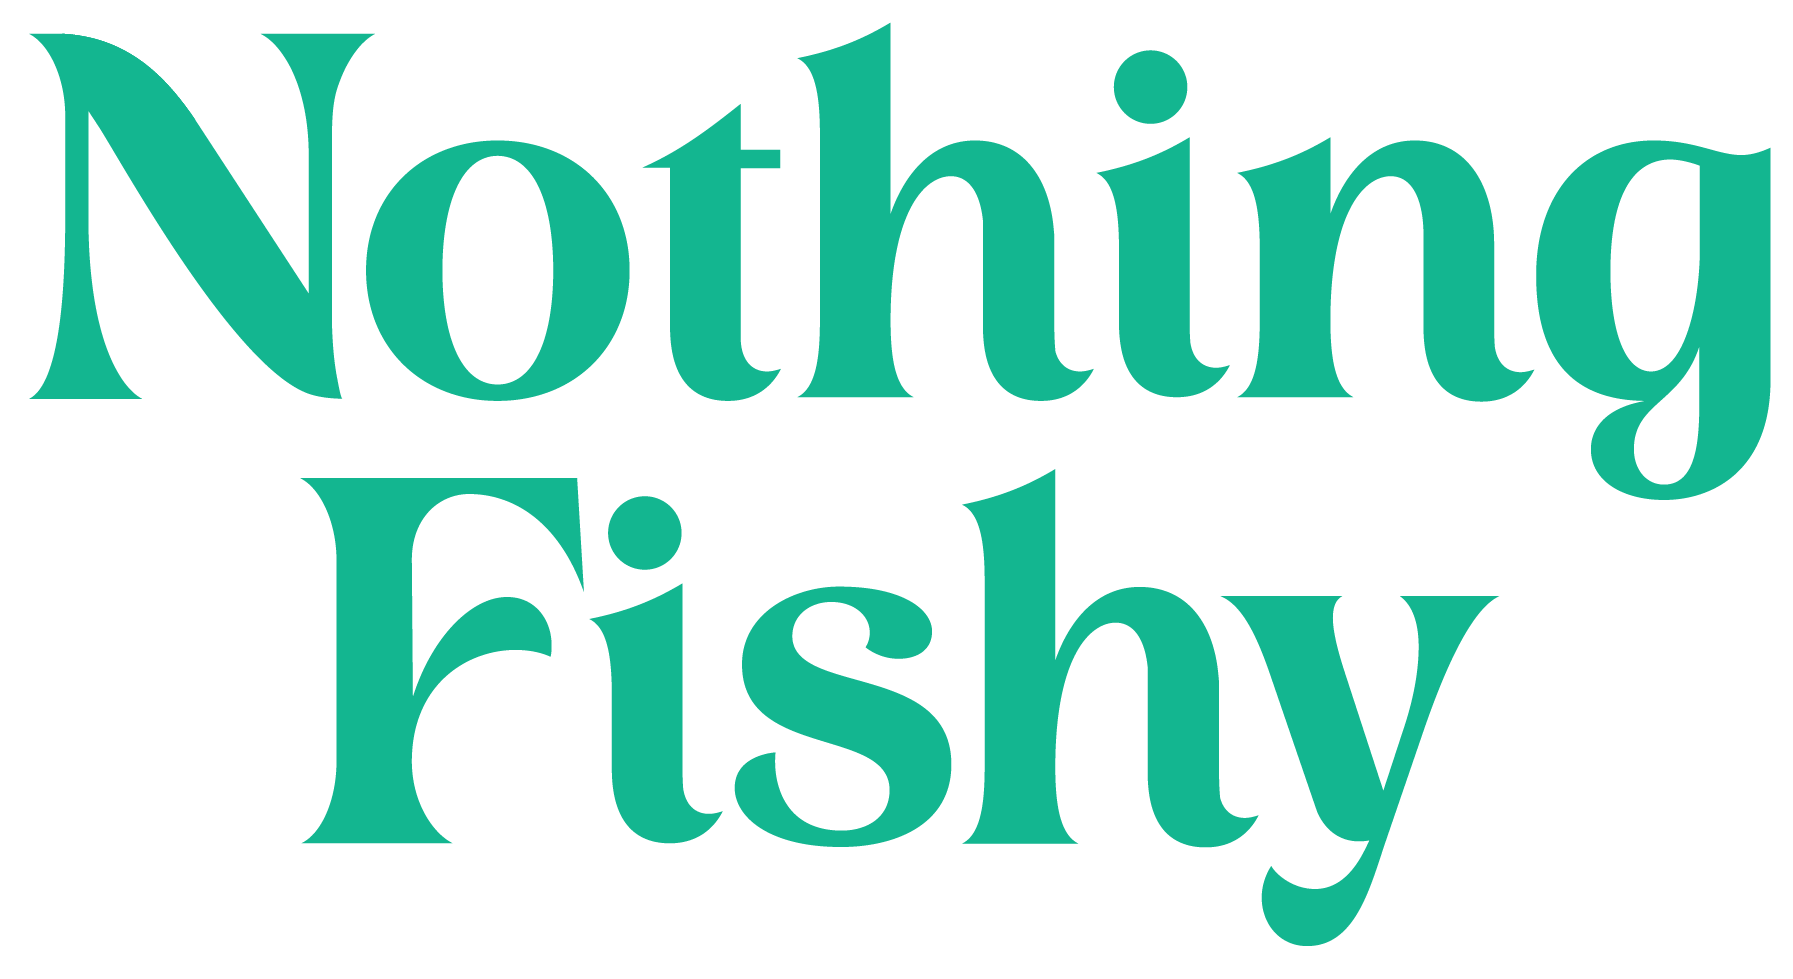 NothingFishy logo